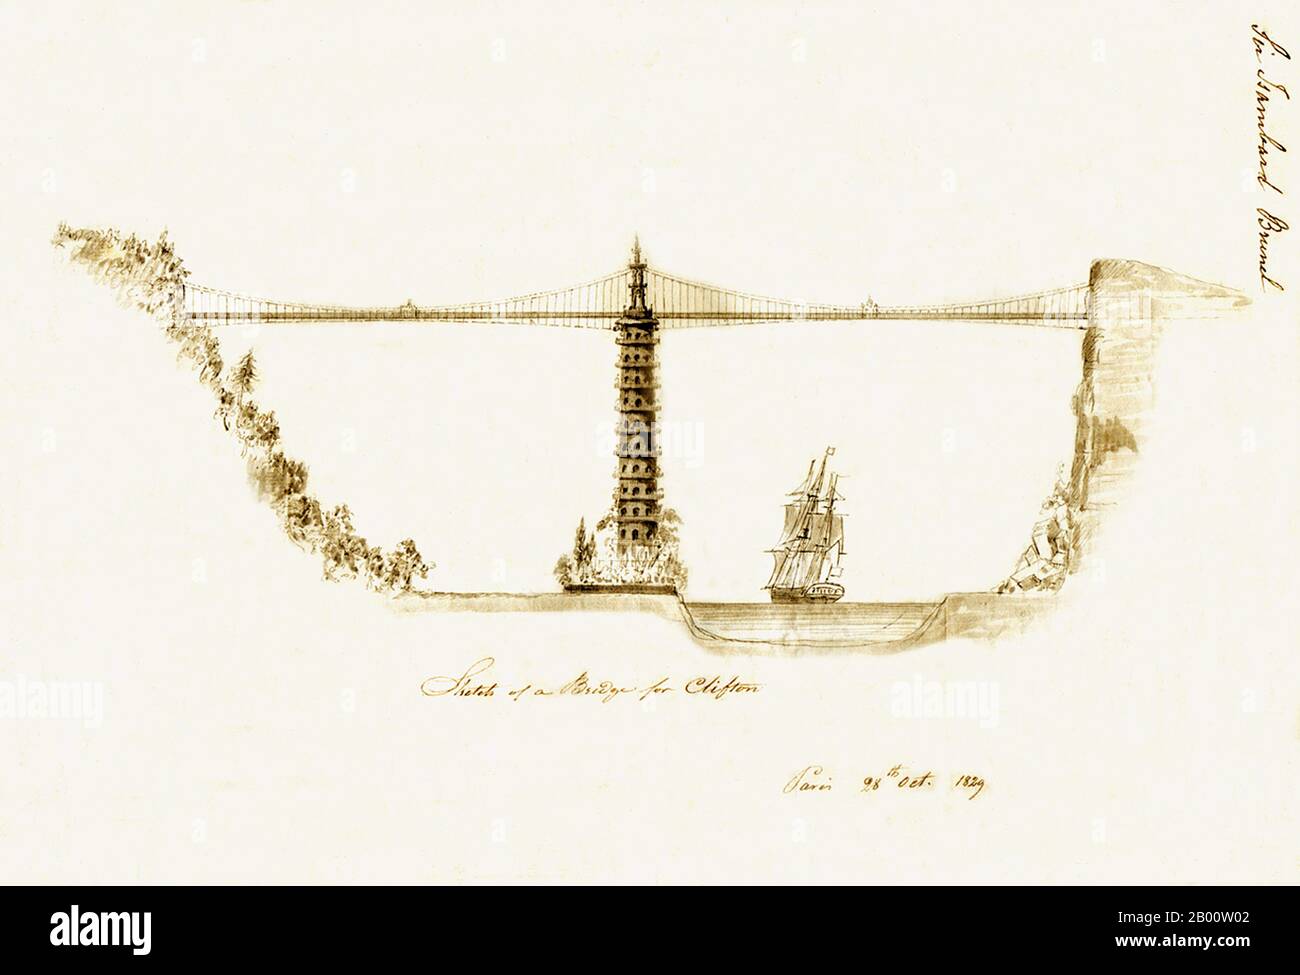 Inghilterra: Un disegno notevole per un ponte 'Chinoiserie' attraverso la Gola di Avon a Bristol da Sir Isambard Kingdom Brunel (1806-1859), datato Parigi, 28 ottobre 1829. Il Clifton Suspension Bridge fu completato nel 1864 dopo il progetto di Brunel, ma senza la pagoda. Foto Stock